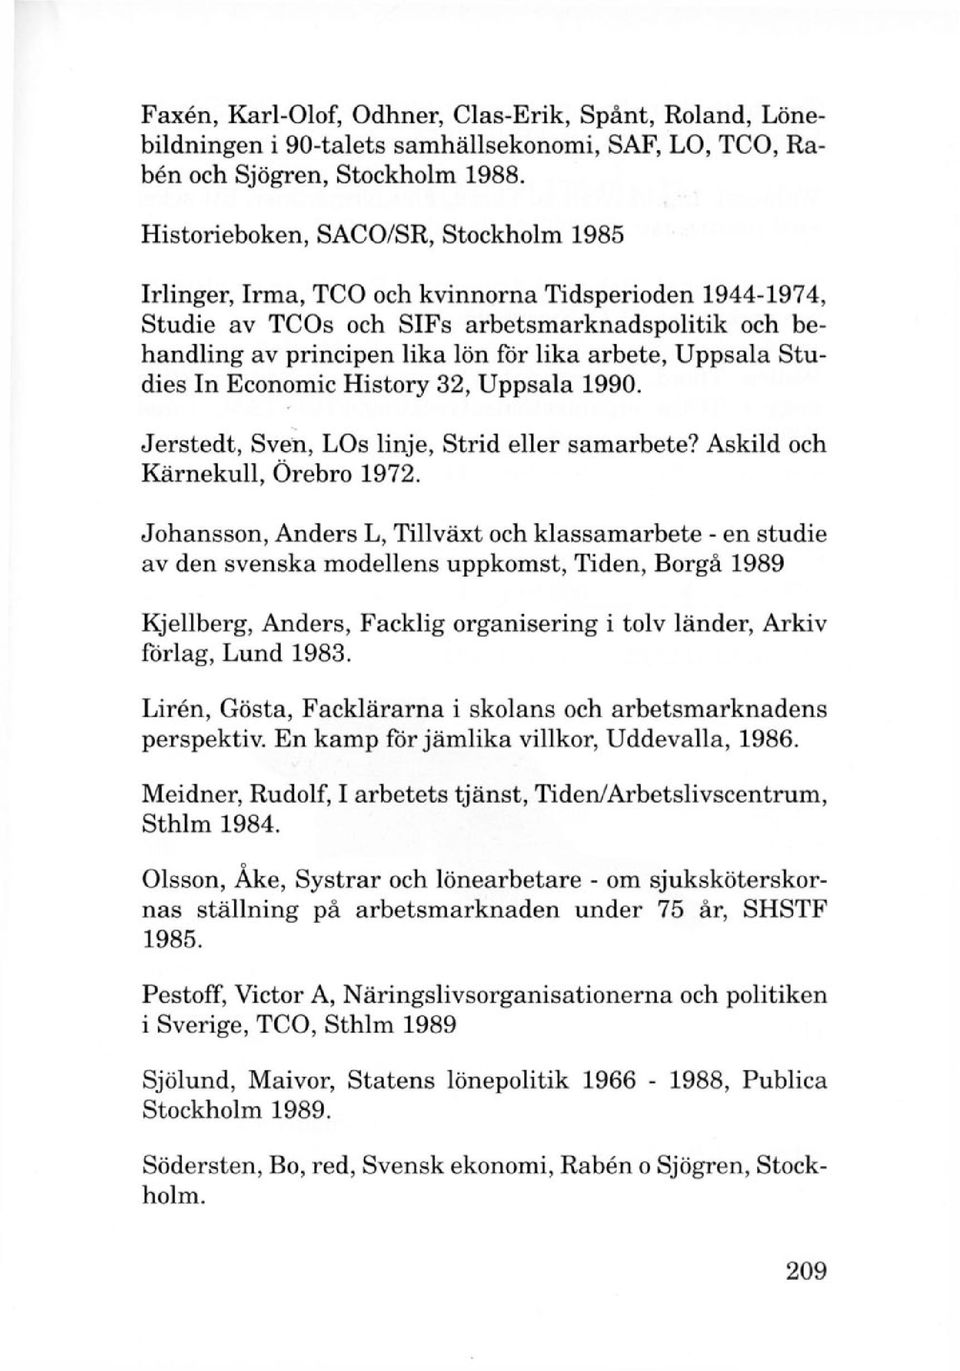 Uppsala Studies In Economic History 32, Uppsala 1990. Jerstedt, Sven, LOs linje, Strid eller samarbete? Askild och Kärnekull, Örebro 1972.